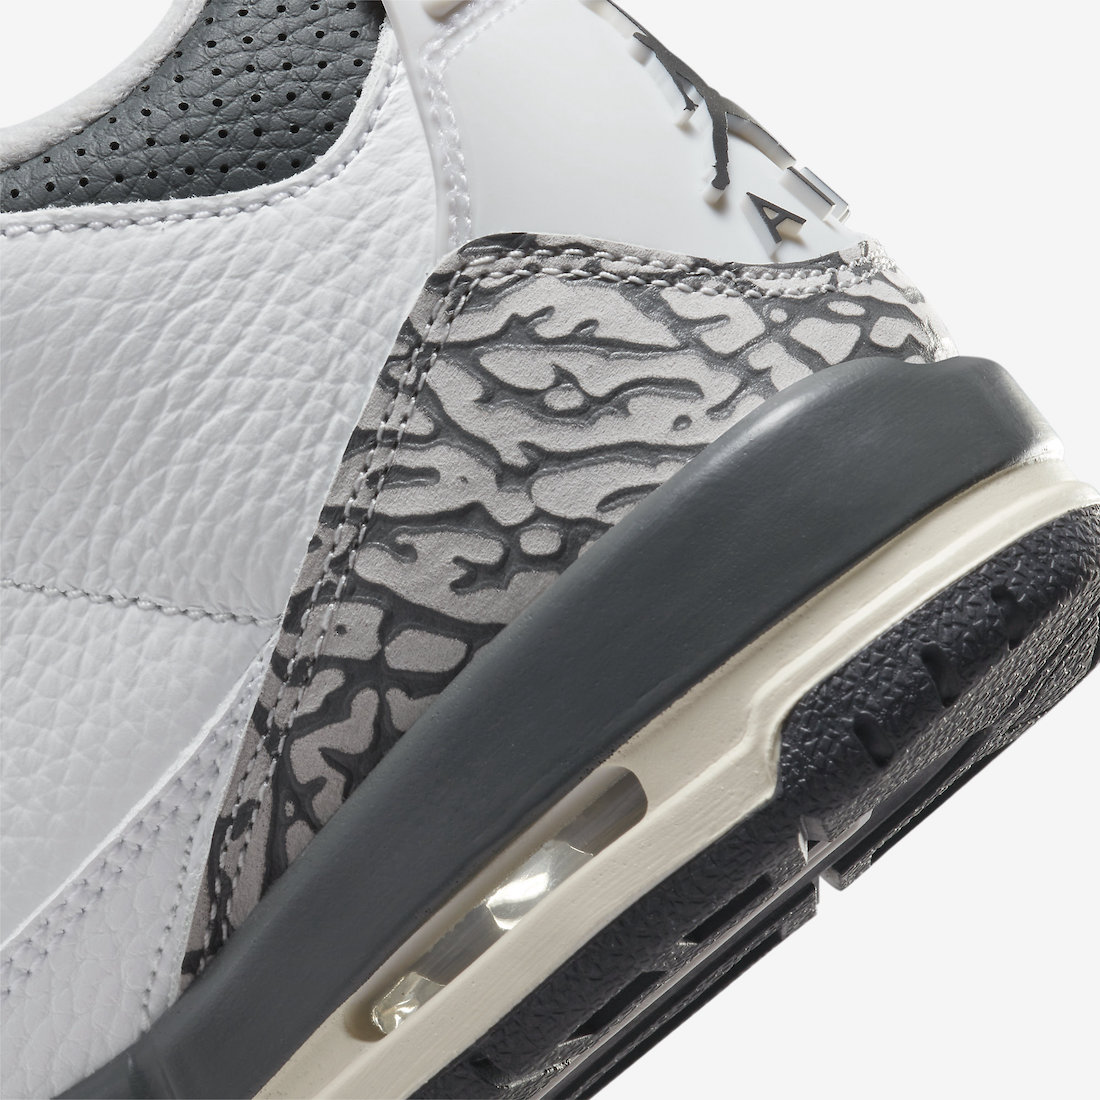 Air Jordan 3 Hide ‘N Sneak DX6665-100 Release Date | SneakerFiles